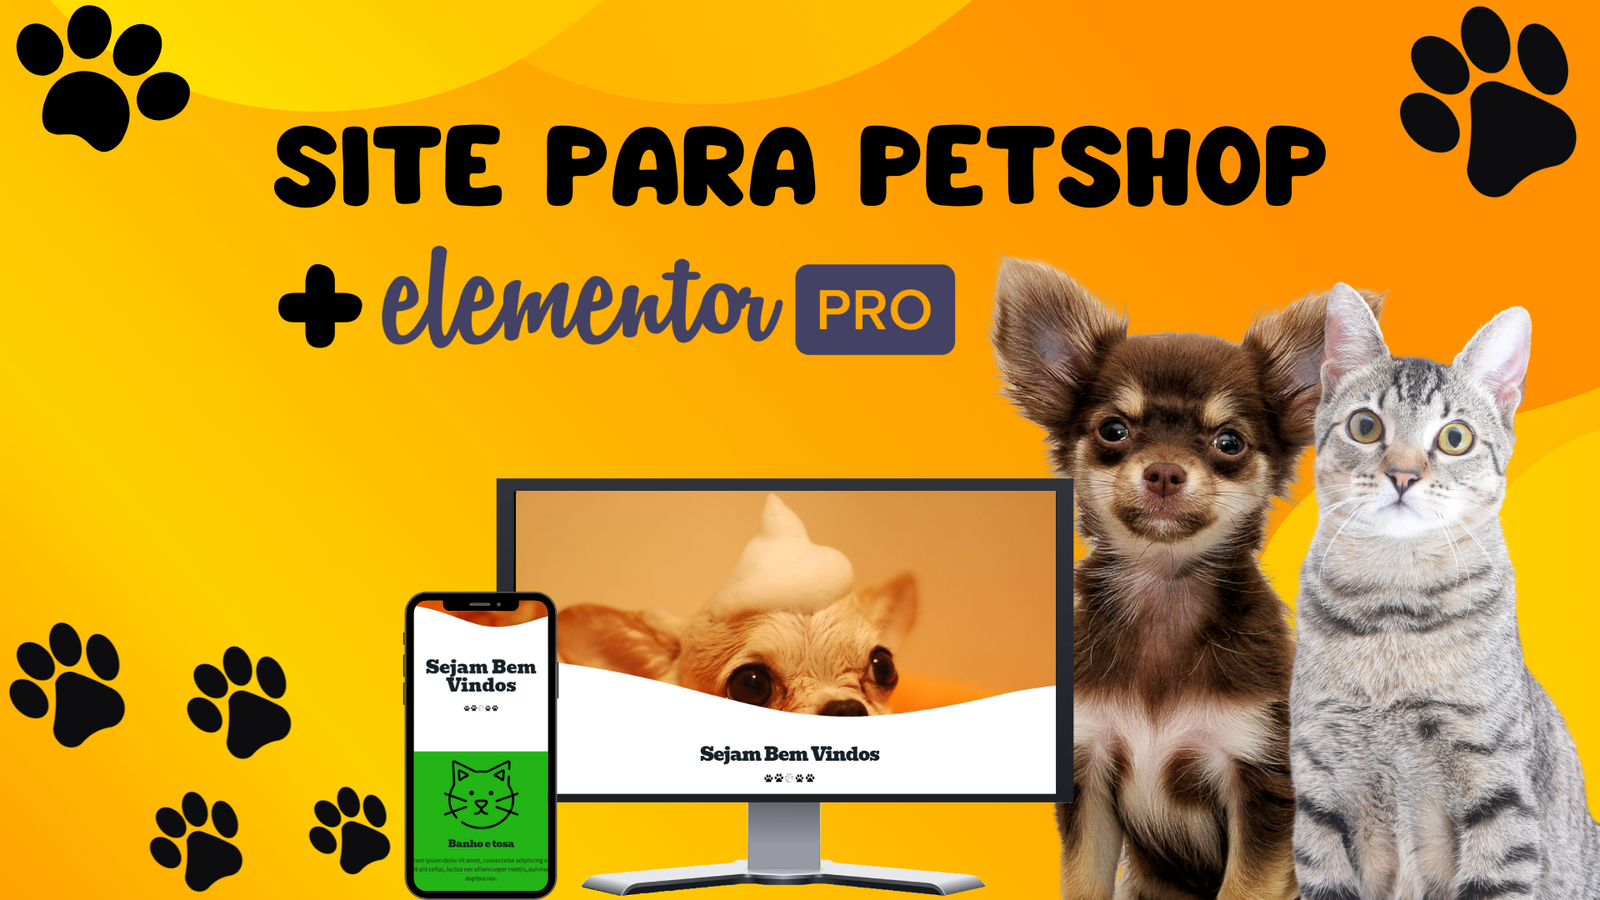 Sites para Petshop + Elementor PRO